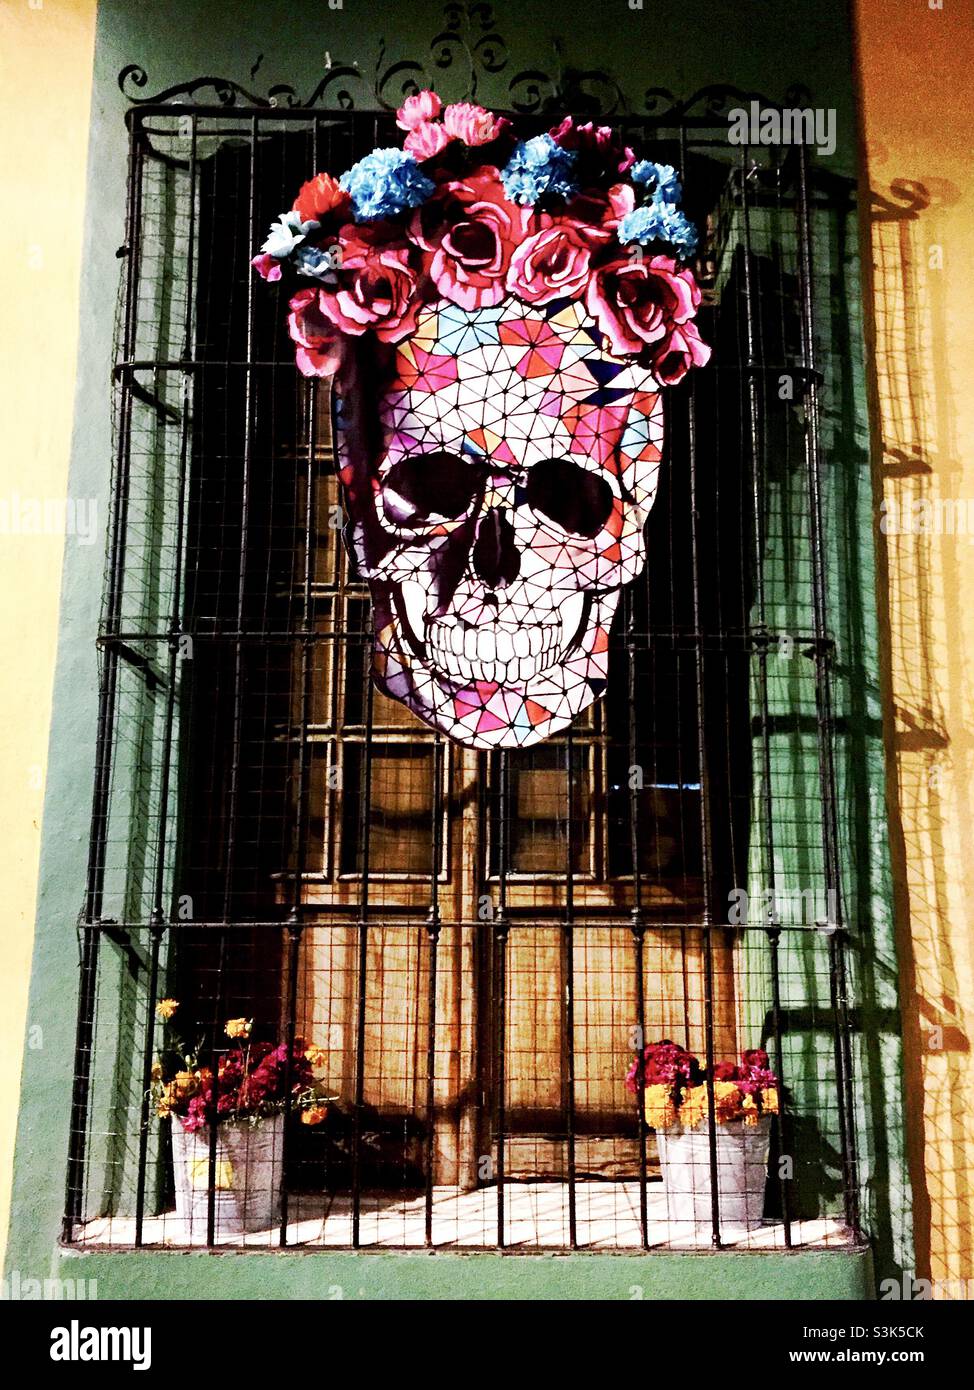 La Catrina, Dia de los Muertos (Day of the Dead), Oaxaca, Mexico Stock Photo